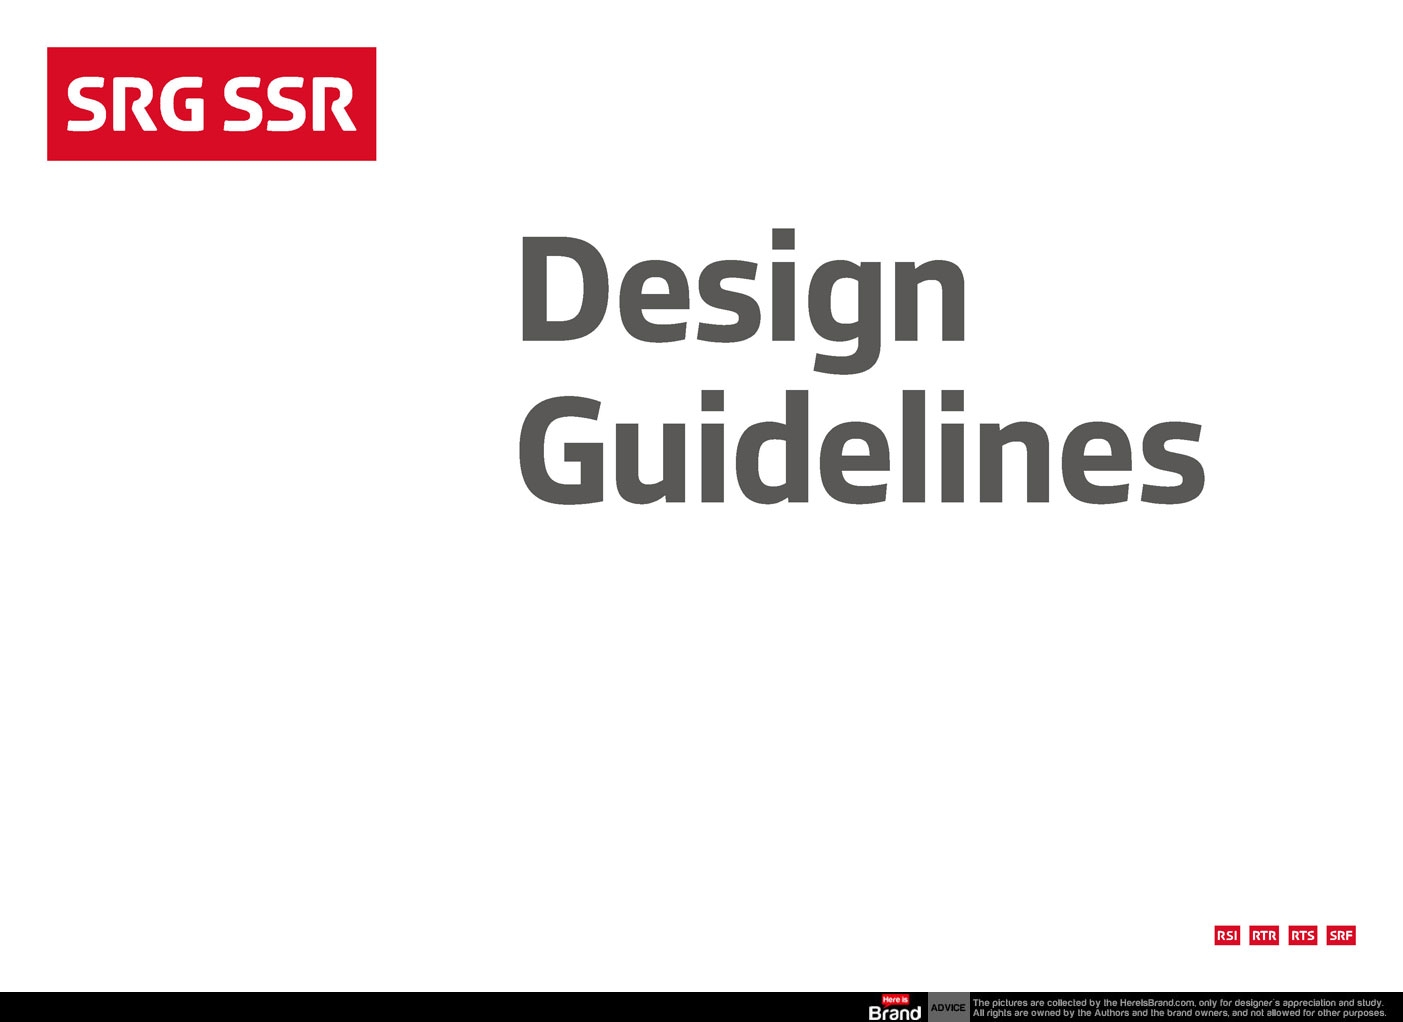 SRG SSR design guidelines